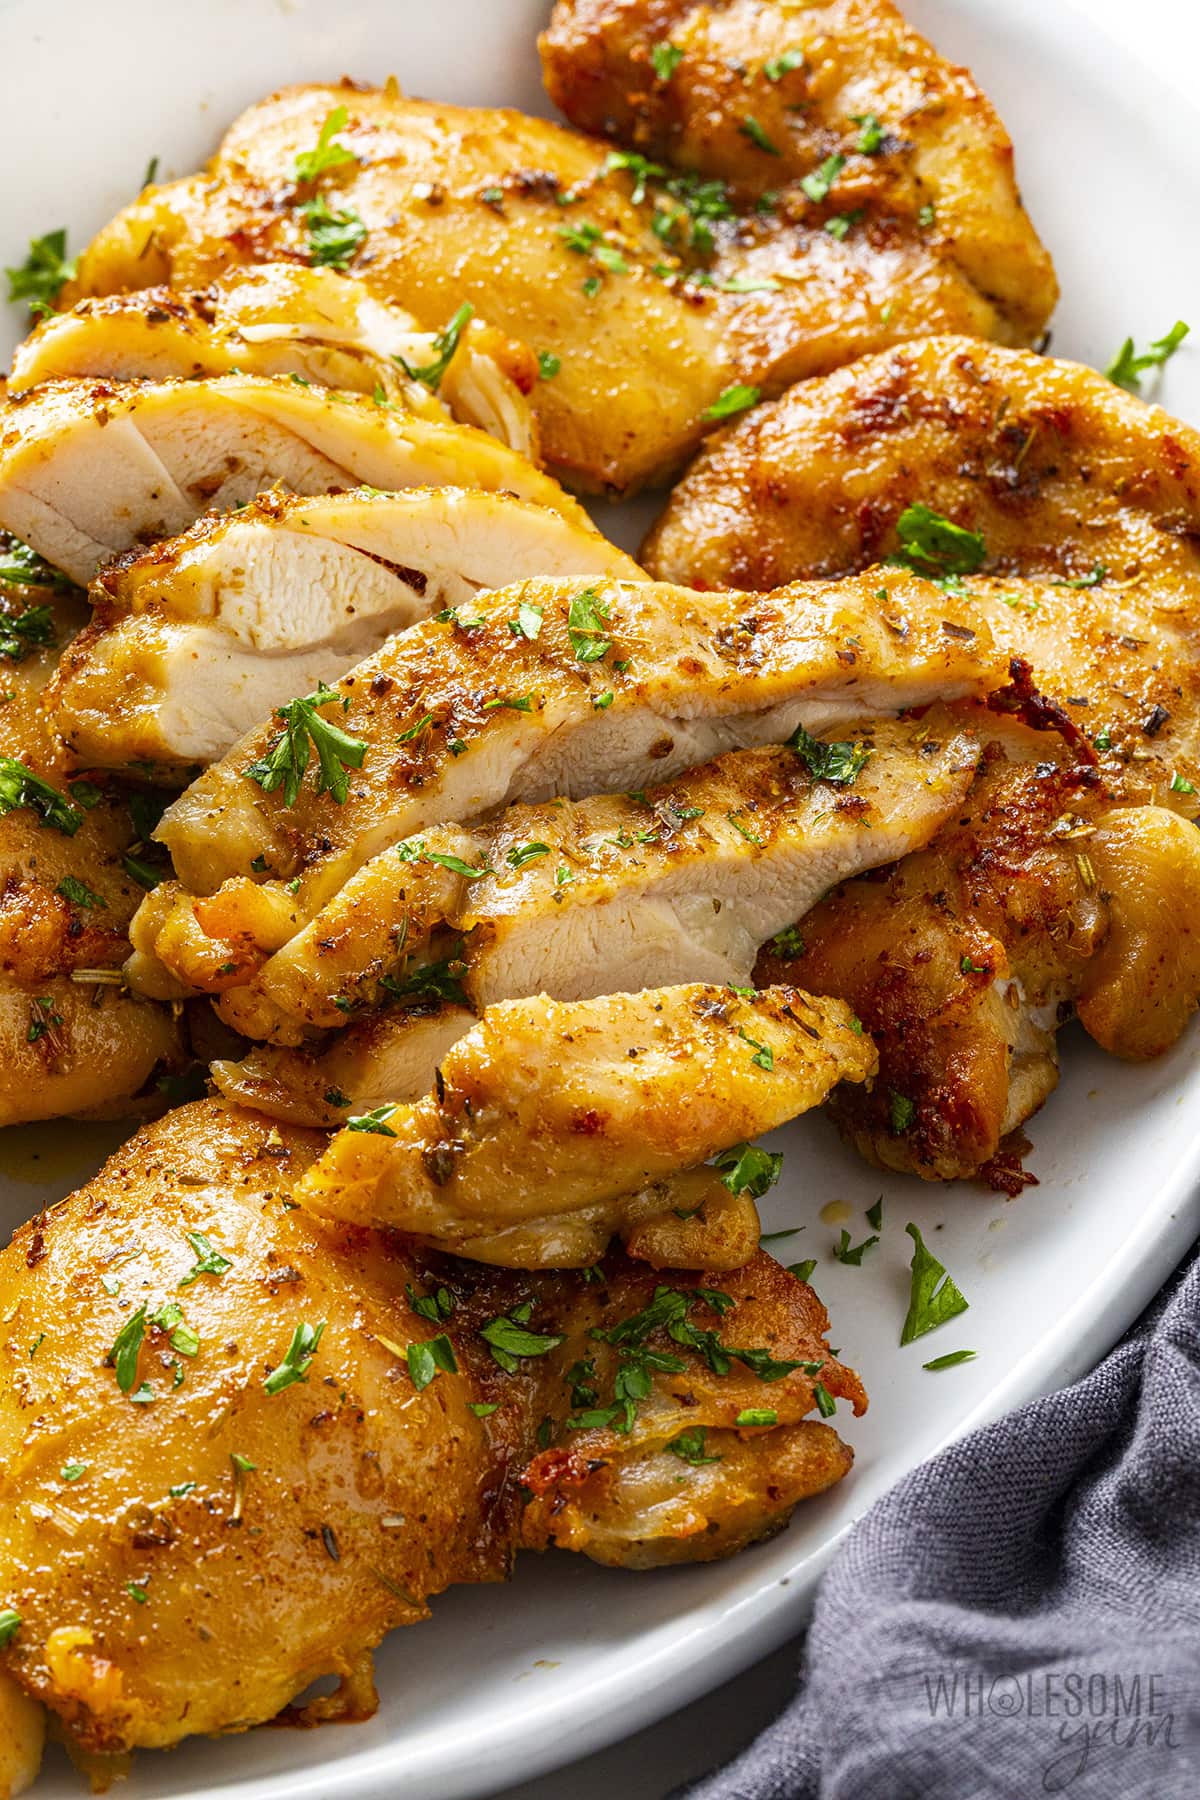 Sliced air fryer boneless chicken thighs on a serving platter.